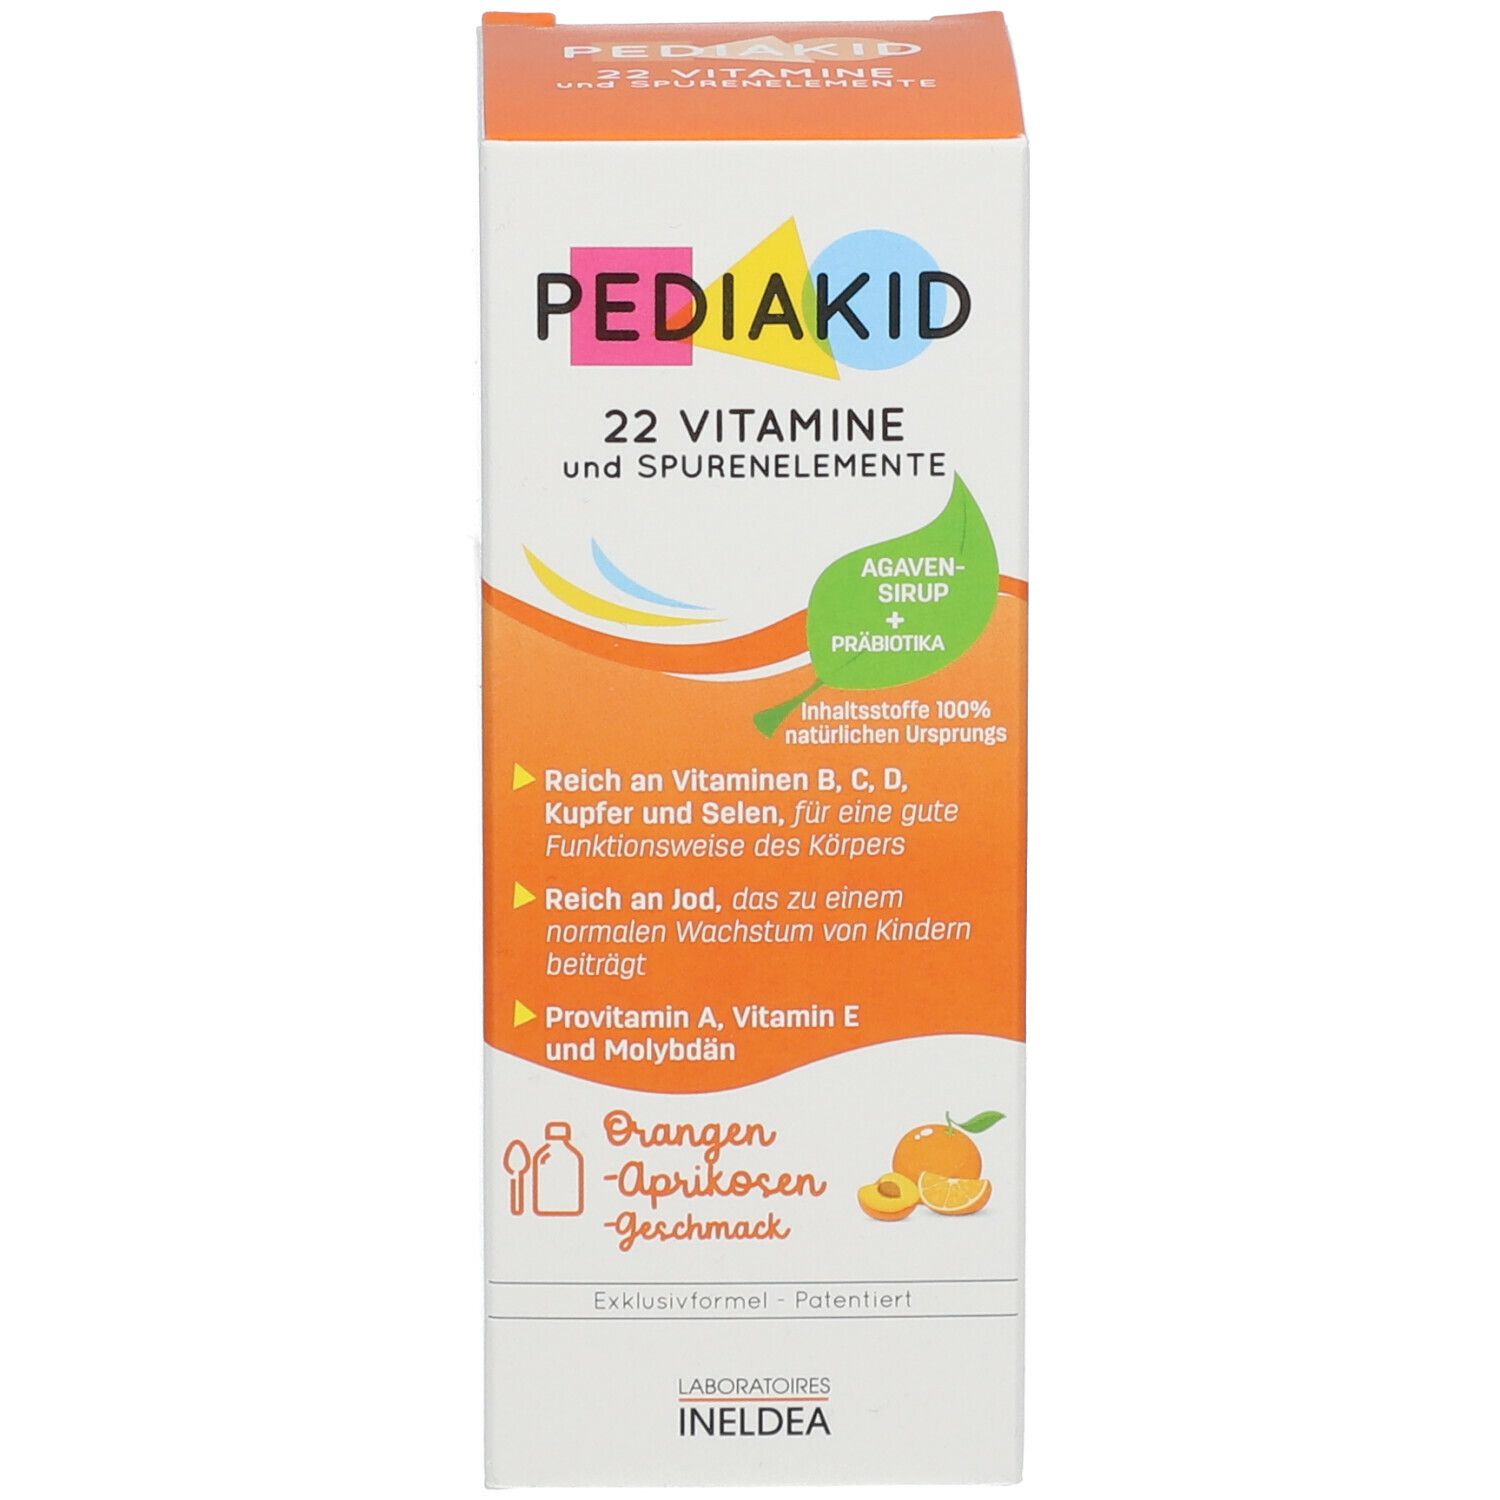  PEDIAKID® 22 Vitamine und Spurenelemente